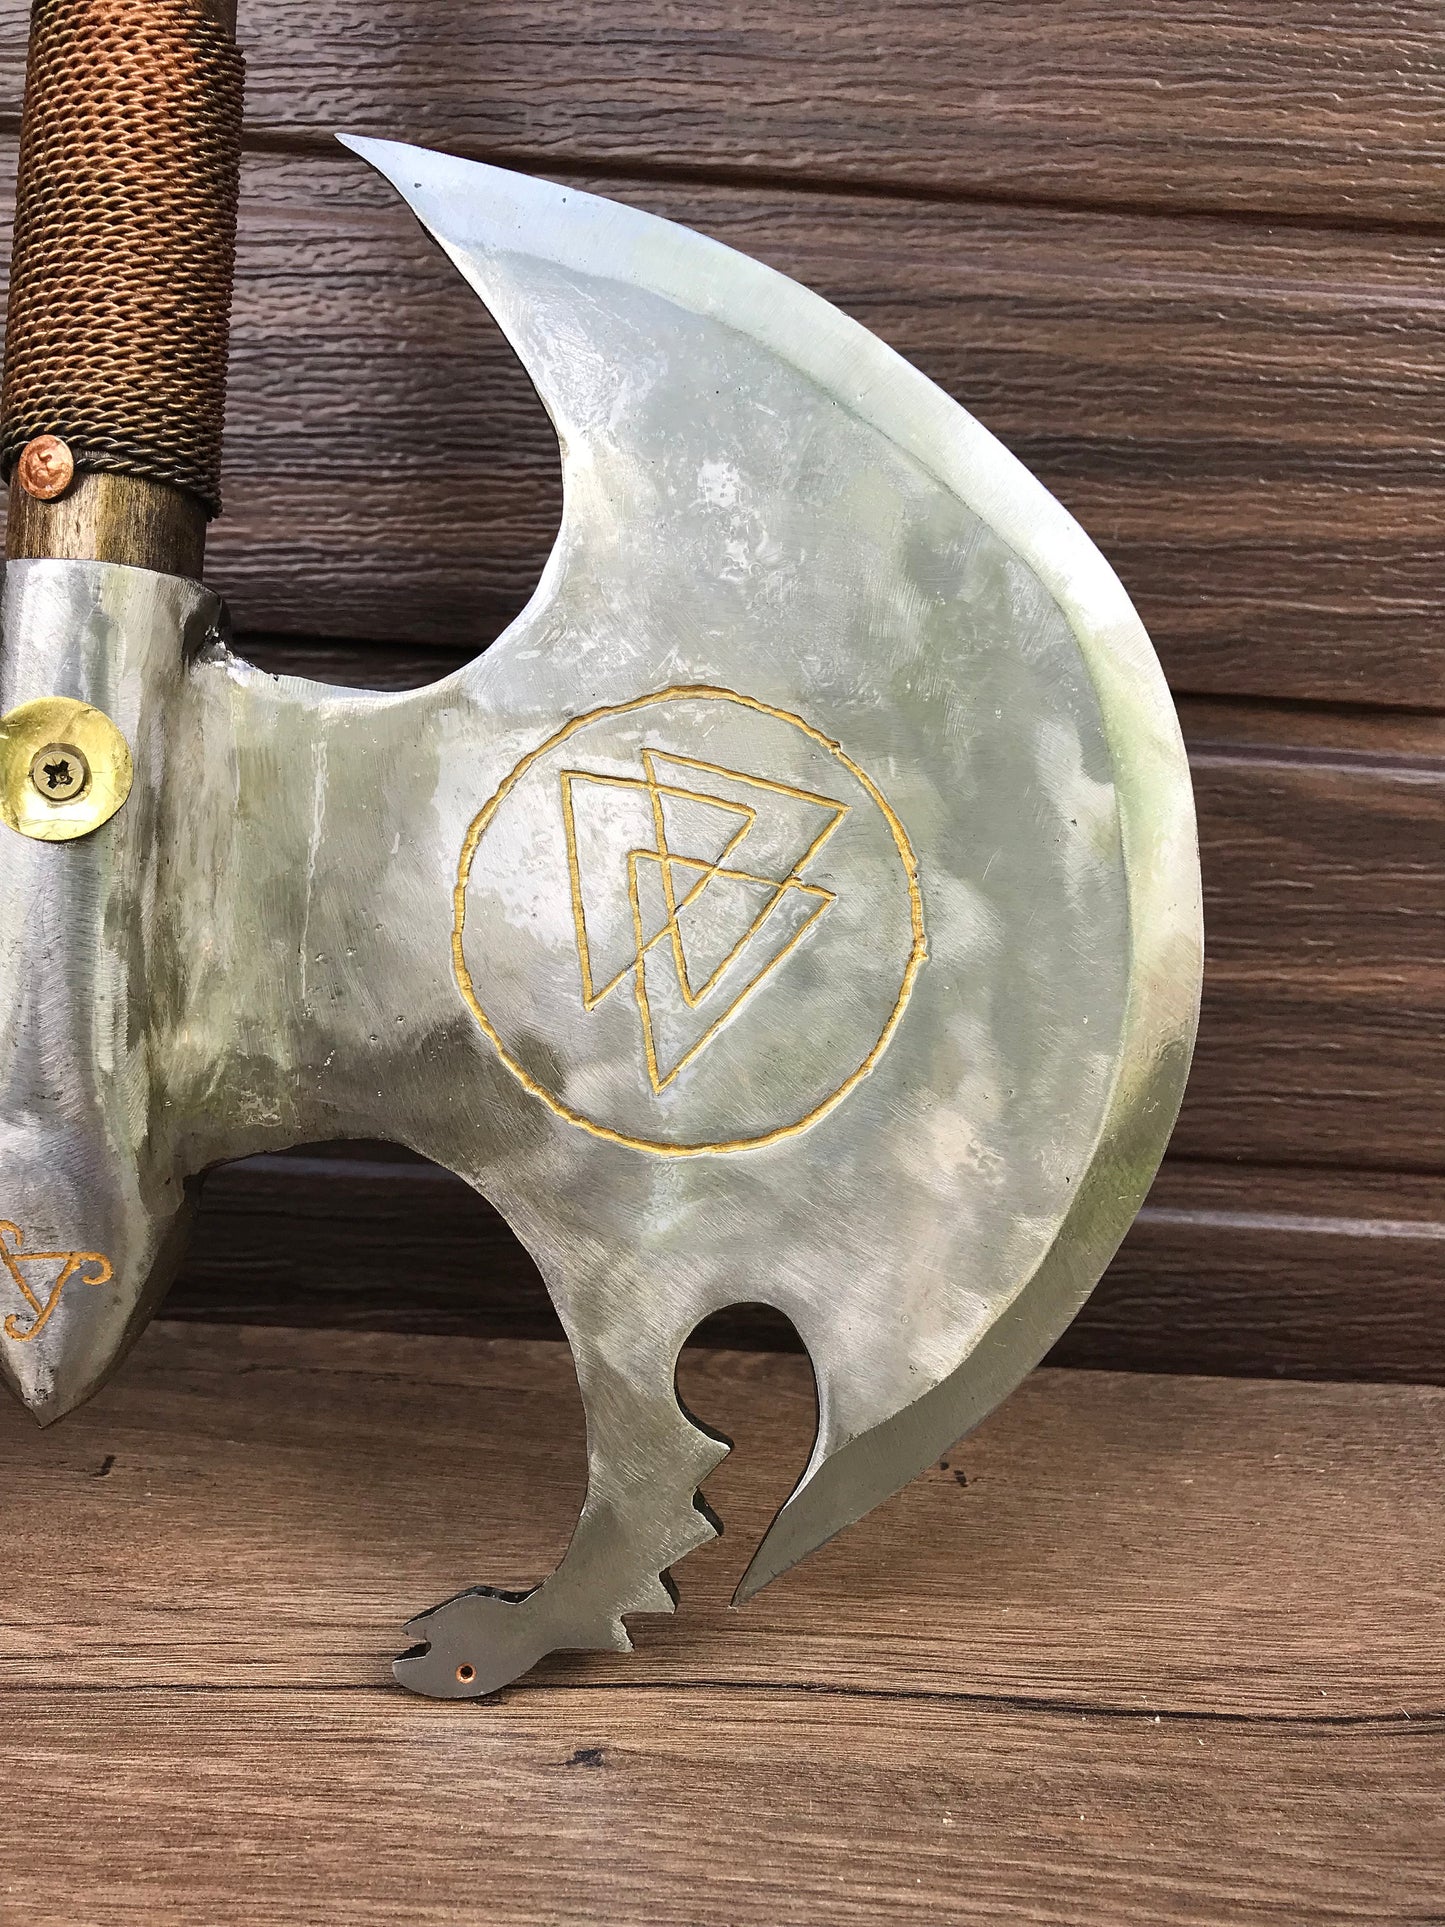 Runic axe, medieval axe, axe gift, valknut, vegvisir, runic compass, viking symbols, viking axe, Leviathan axe, Kratos axe, cosplay weapon